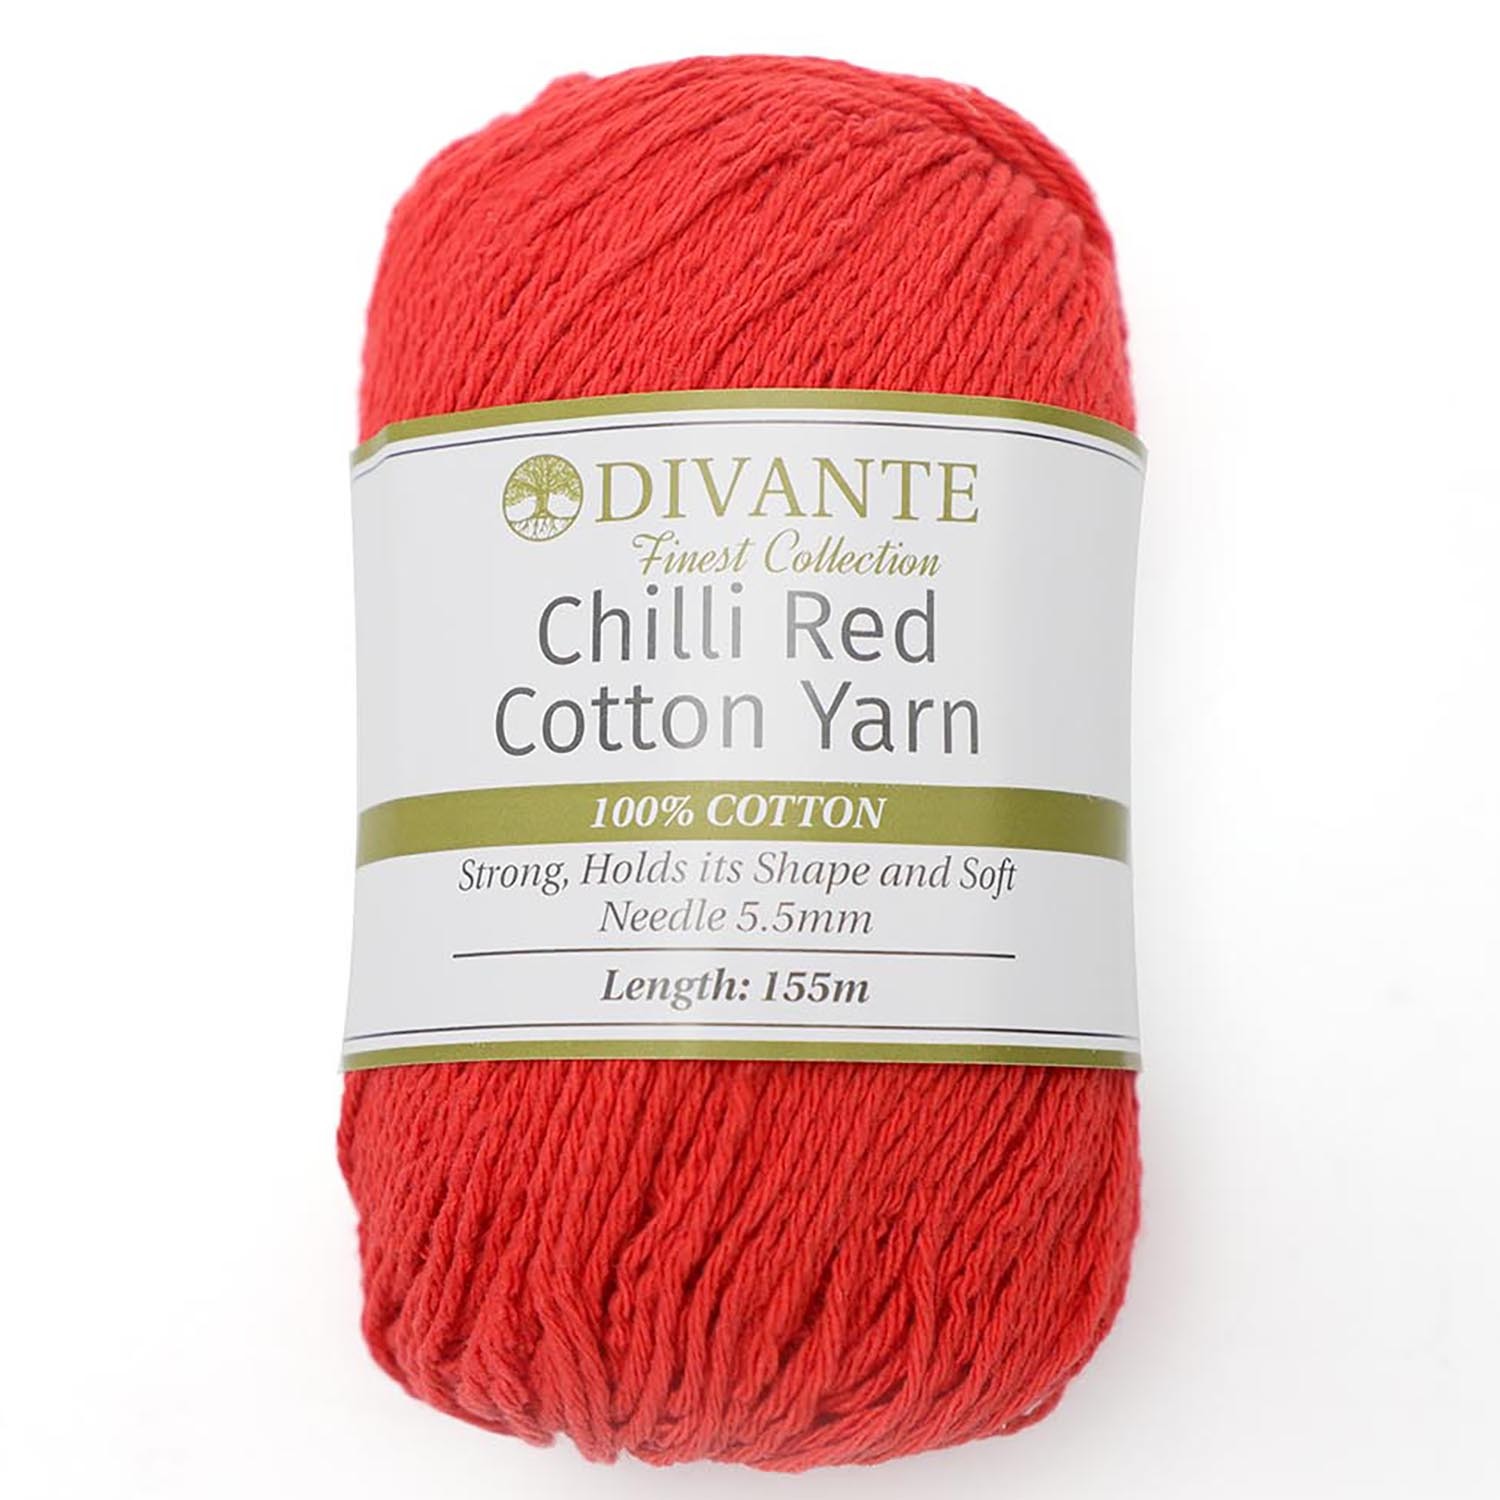 Divante Chilli Red Cotton Yarn 100g Image